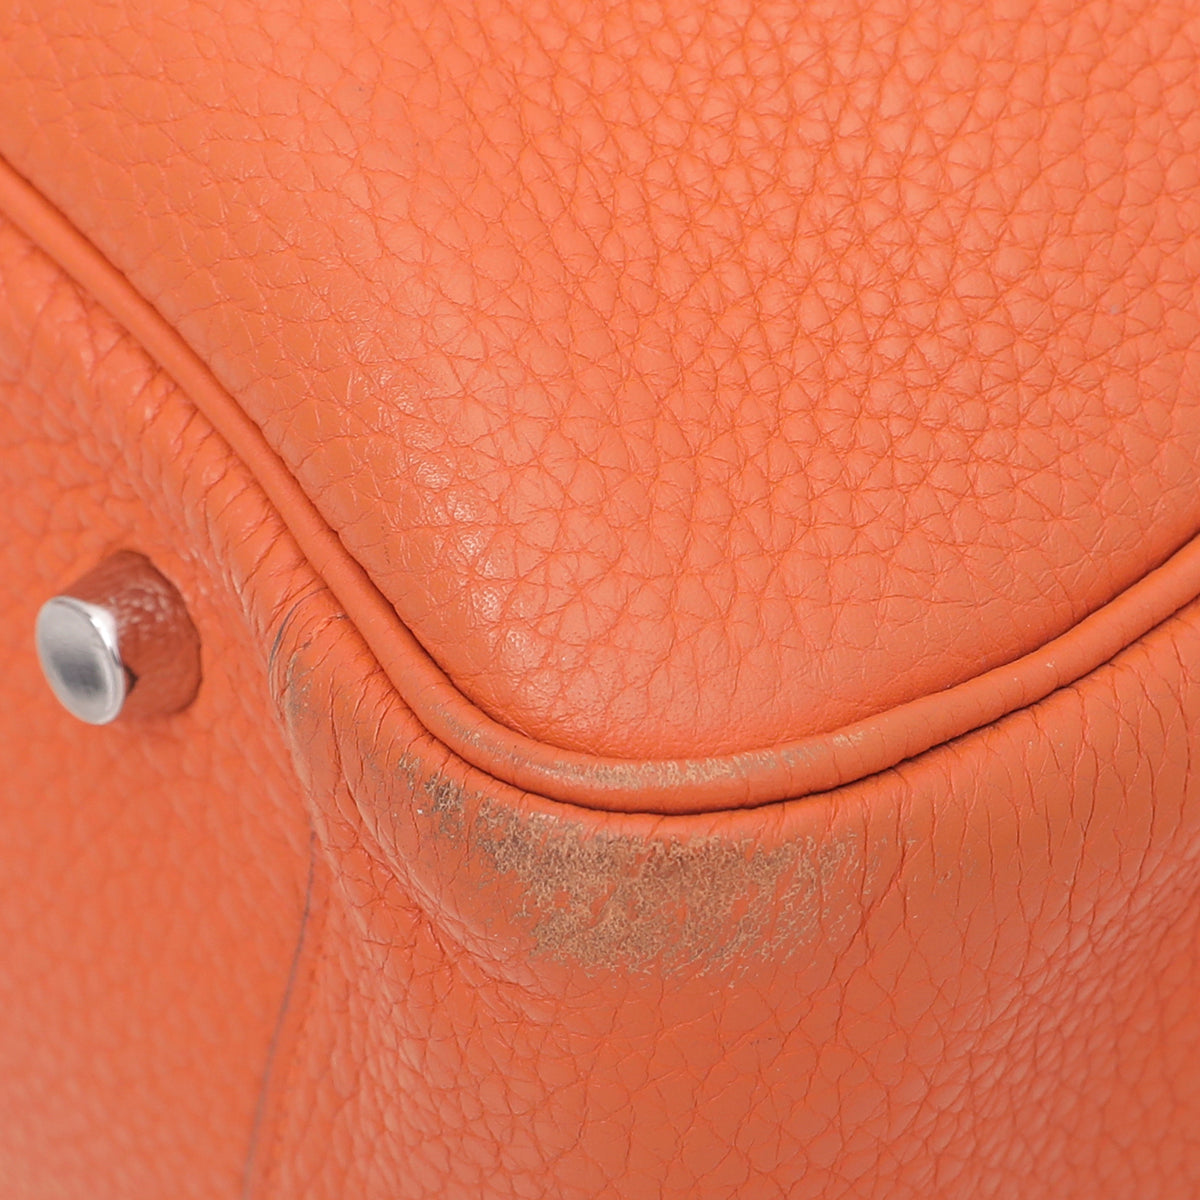 Hermes Orange Clemence Lindy 34 Bag